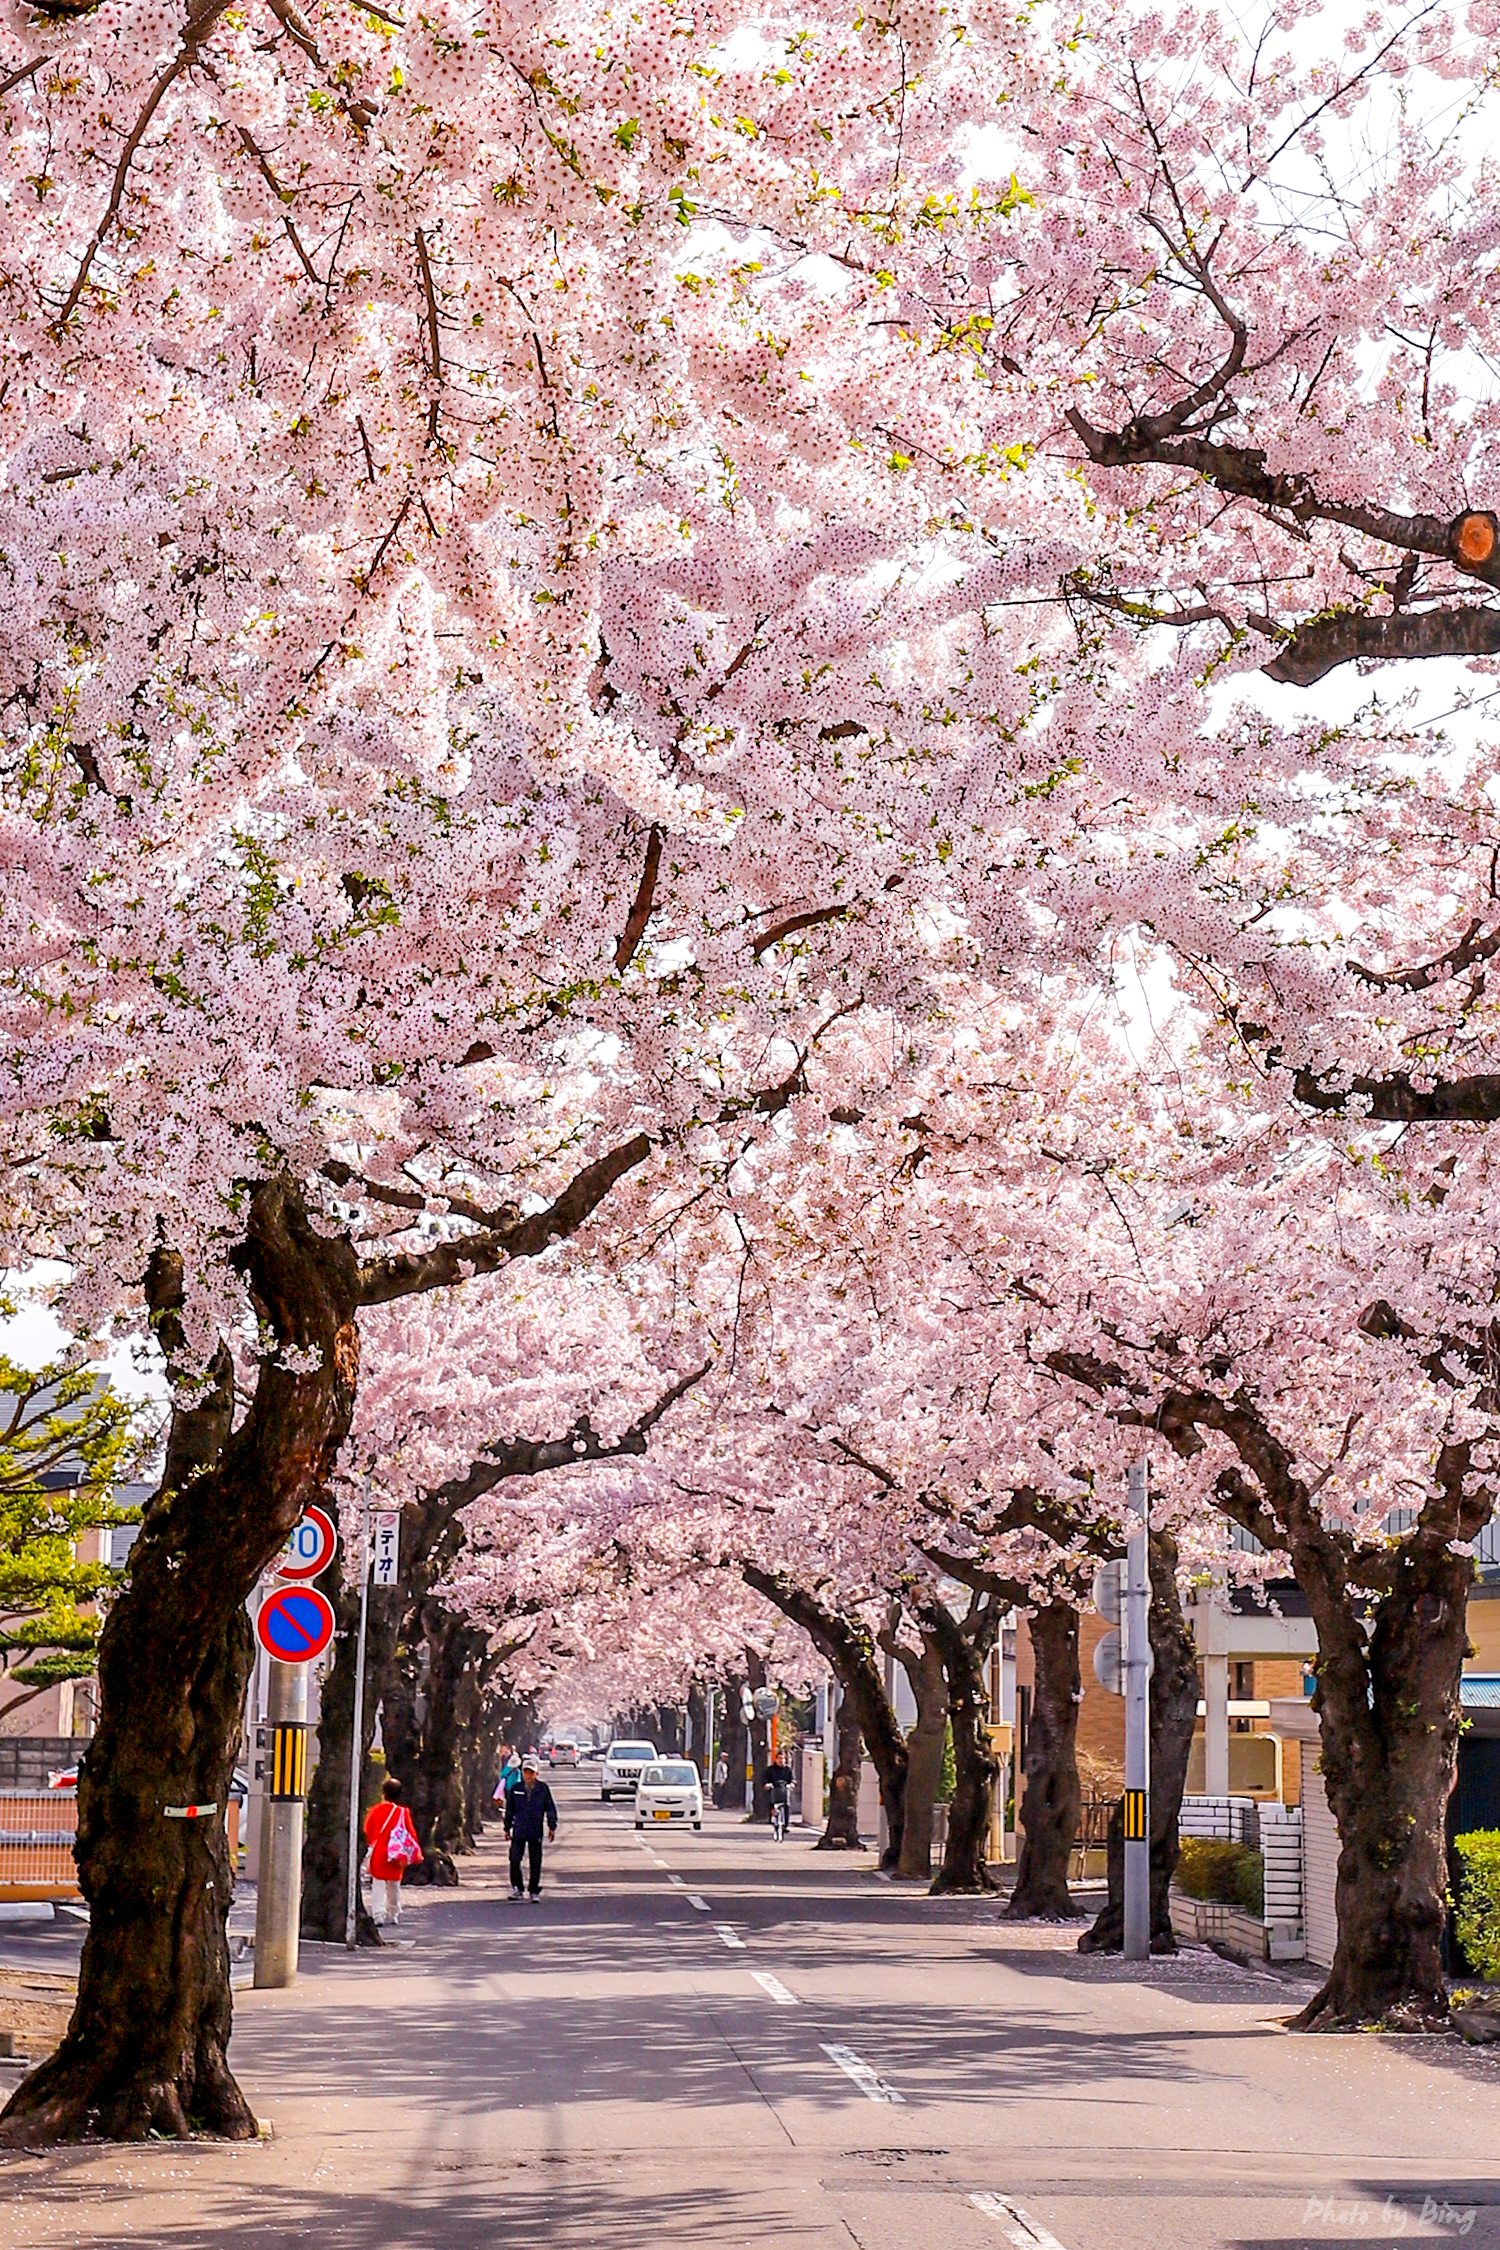 日本樱花街道唯美图片